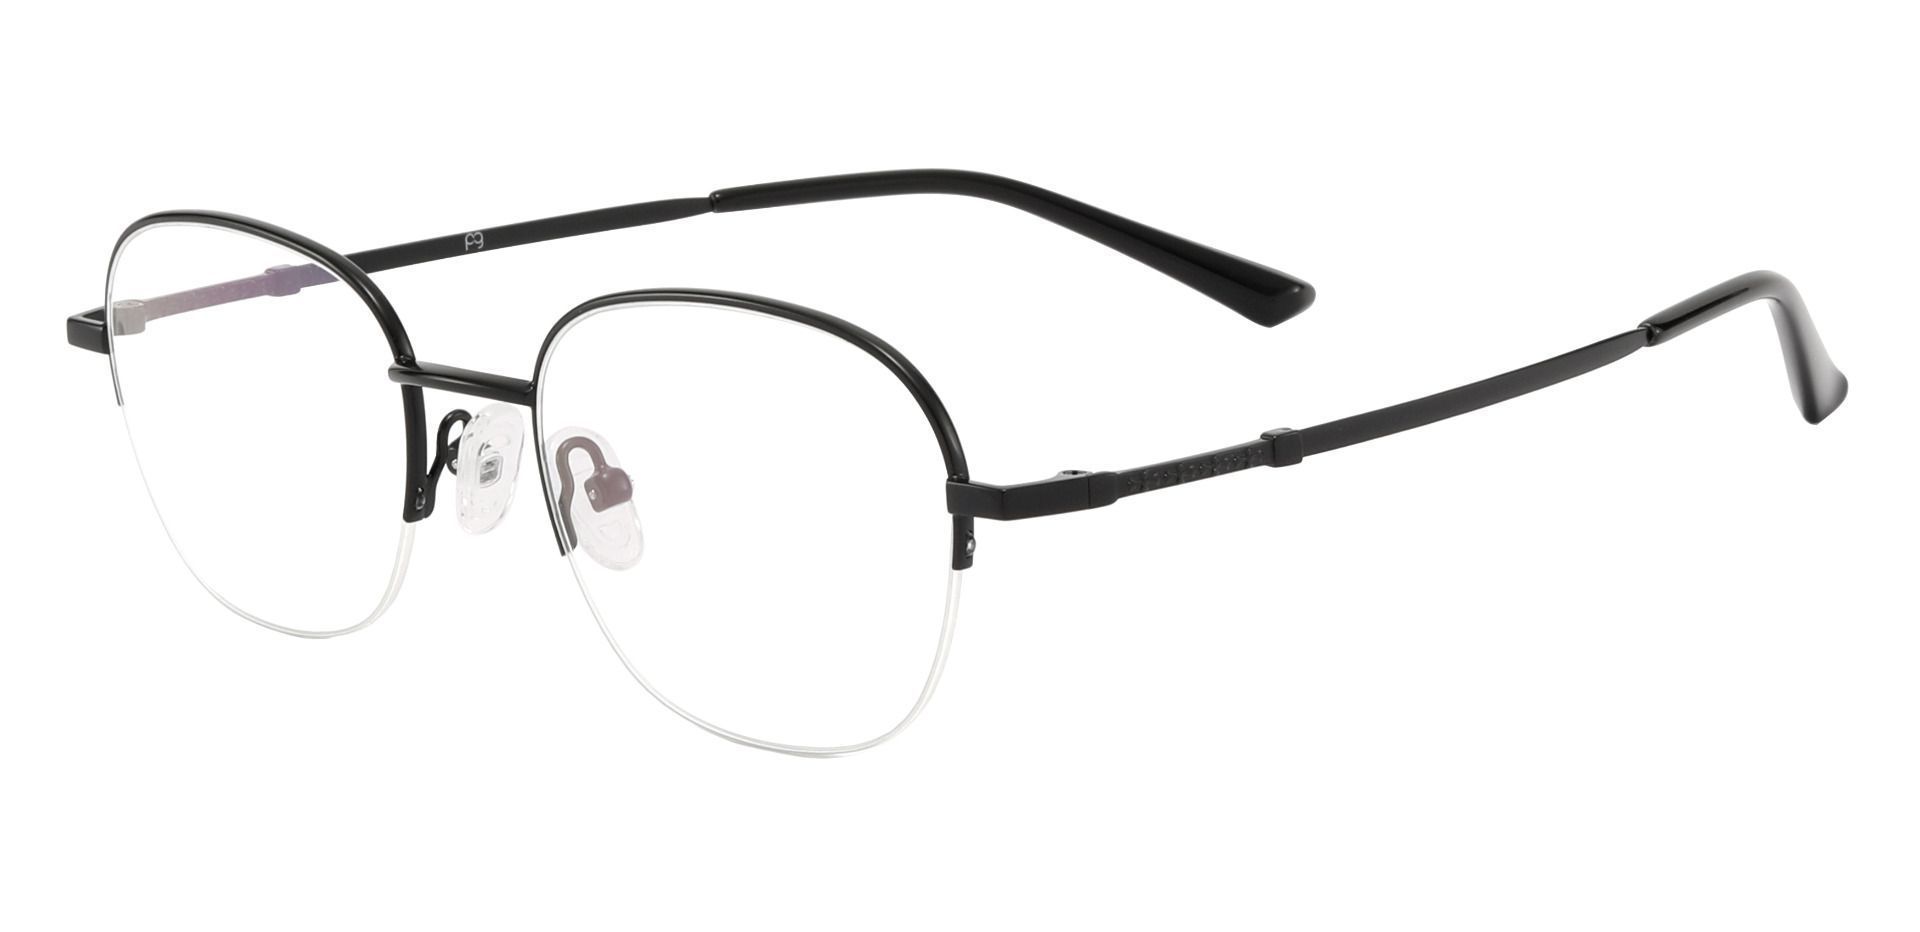 Rochester Oval Eyeglasses Frame - Black